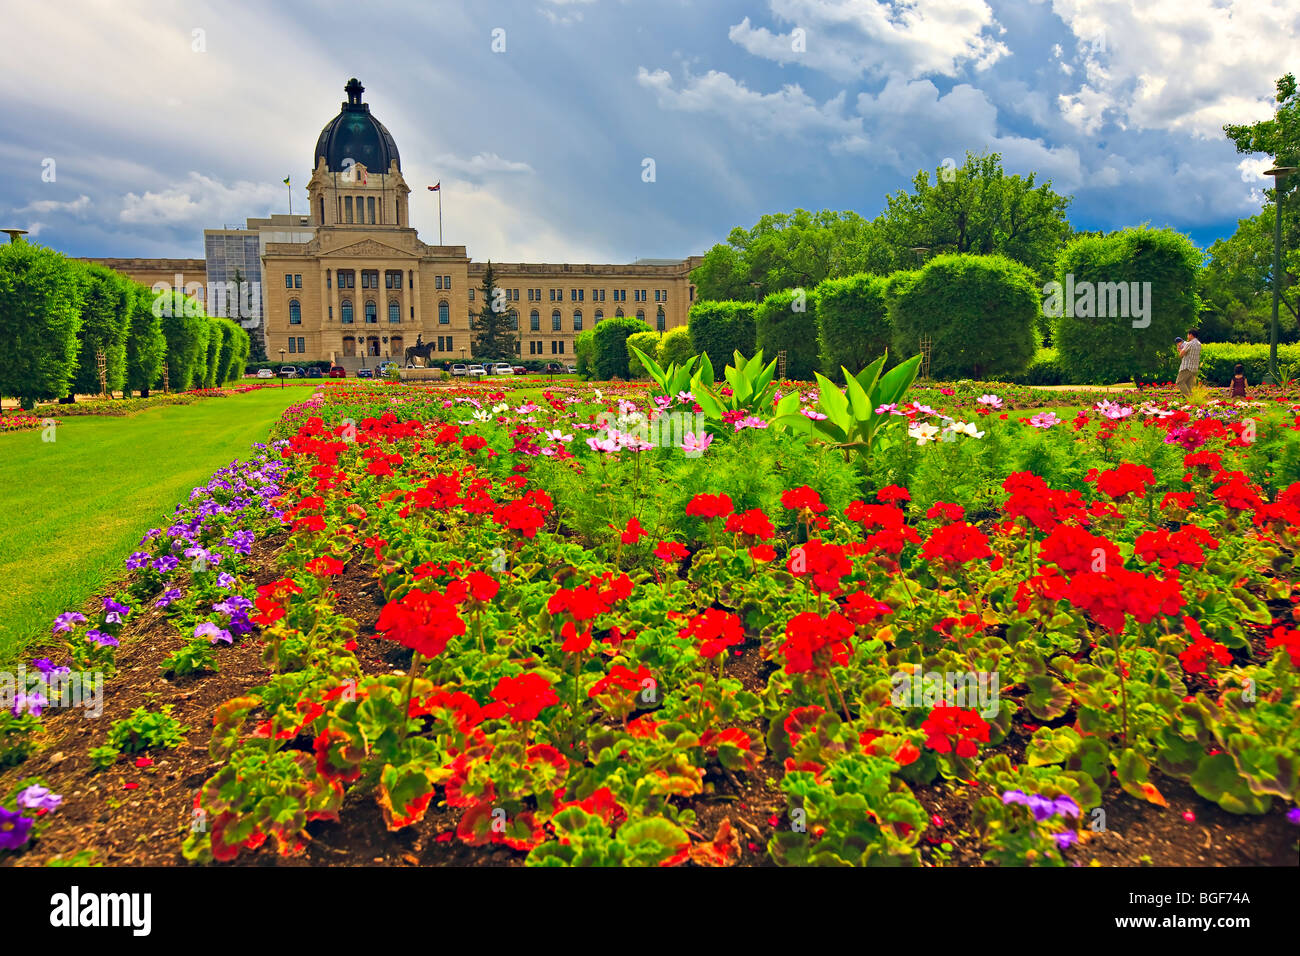 Les Jardins de la reine Elizabeth II et l'Édifice de l'Assemblée législative dans la ville de Regina, Saskatchewan, Canada. Banque D'Images